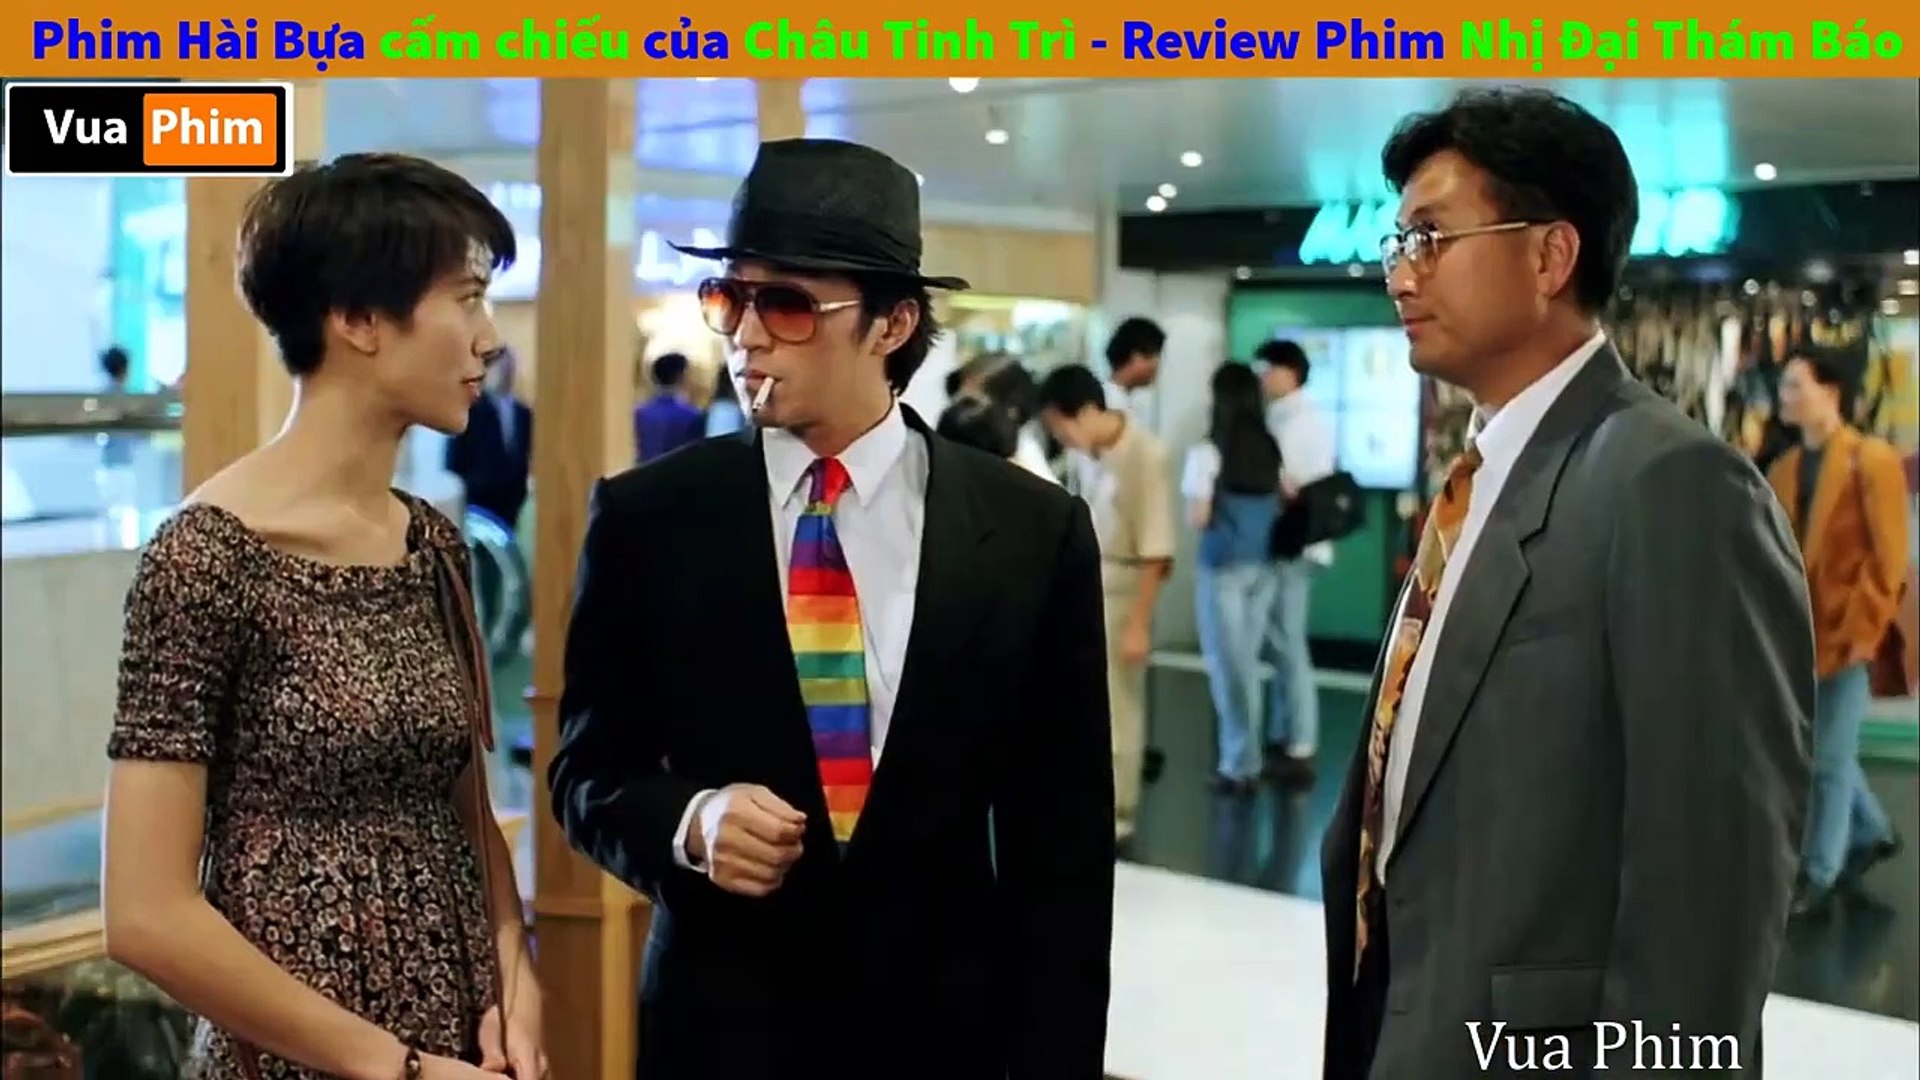 ⁣Review Phim Hài Bựa bị Cấm Chiếu của Châu Tinh Trì review phim Nhị Đại Thám Báo - Vua Phim Review #1